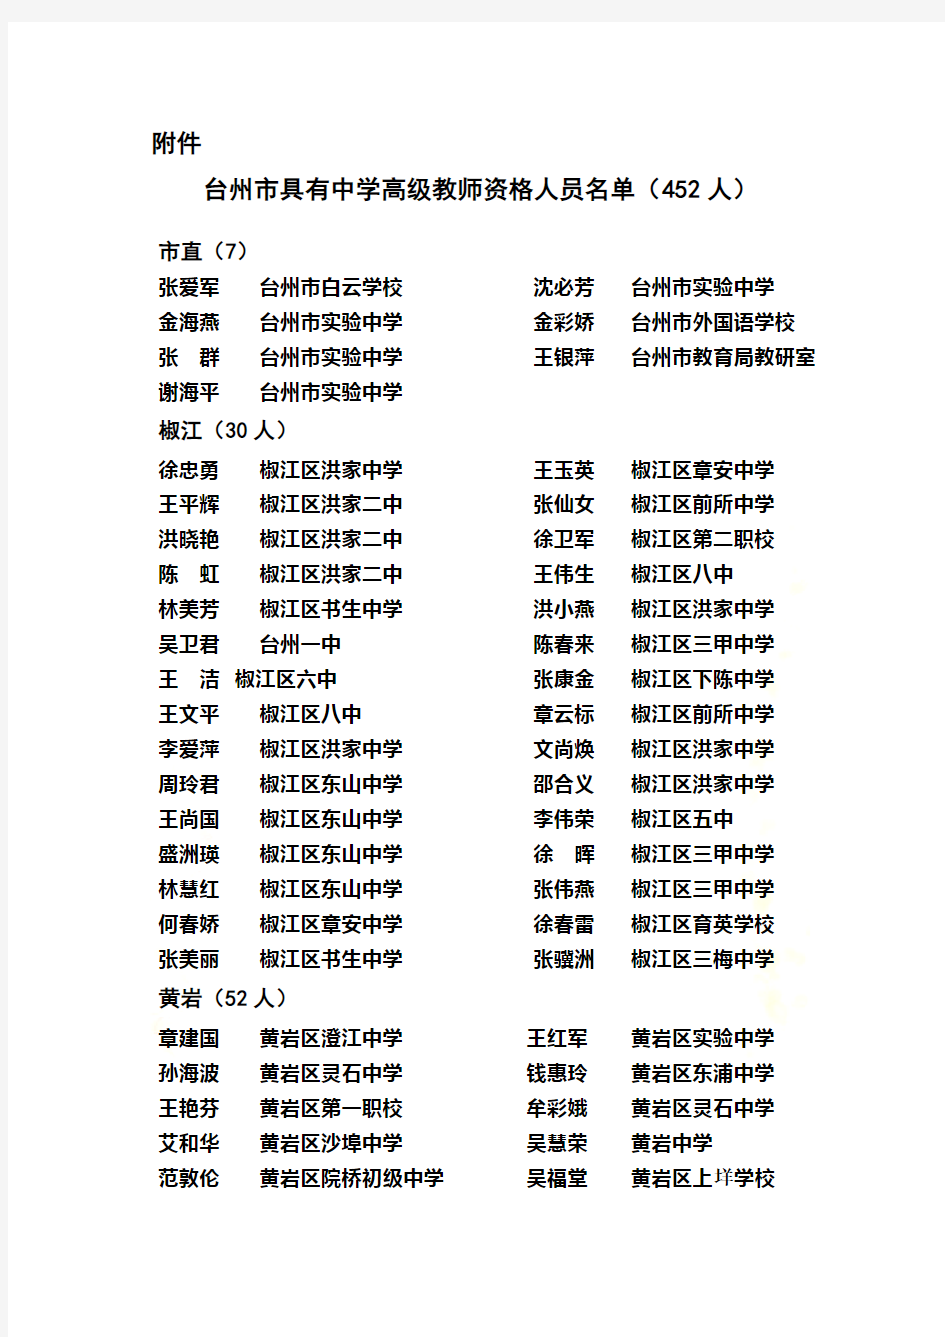 台州市具有中学高级教师资格人员名单(452人)